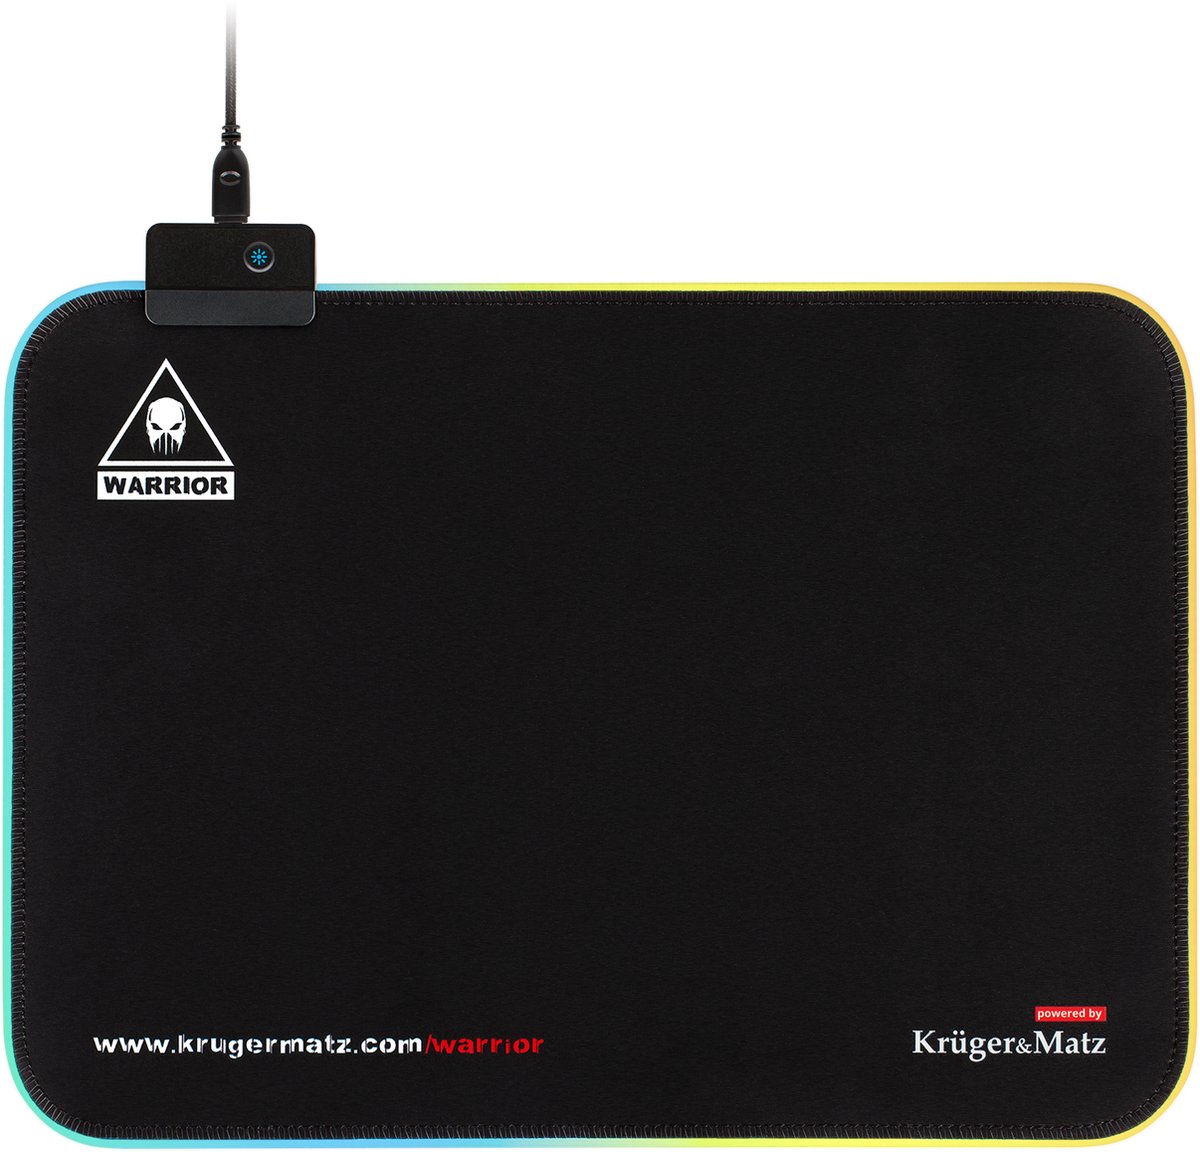 Krüger&Matz KM0766 - Warrior Gaming LED-muismat, zwart